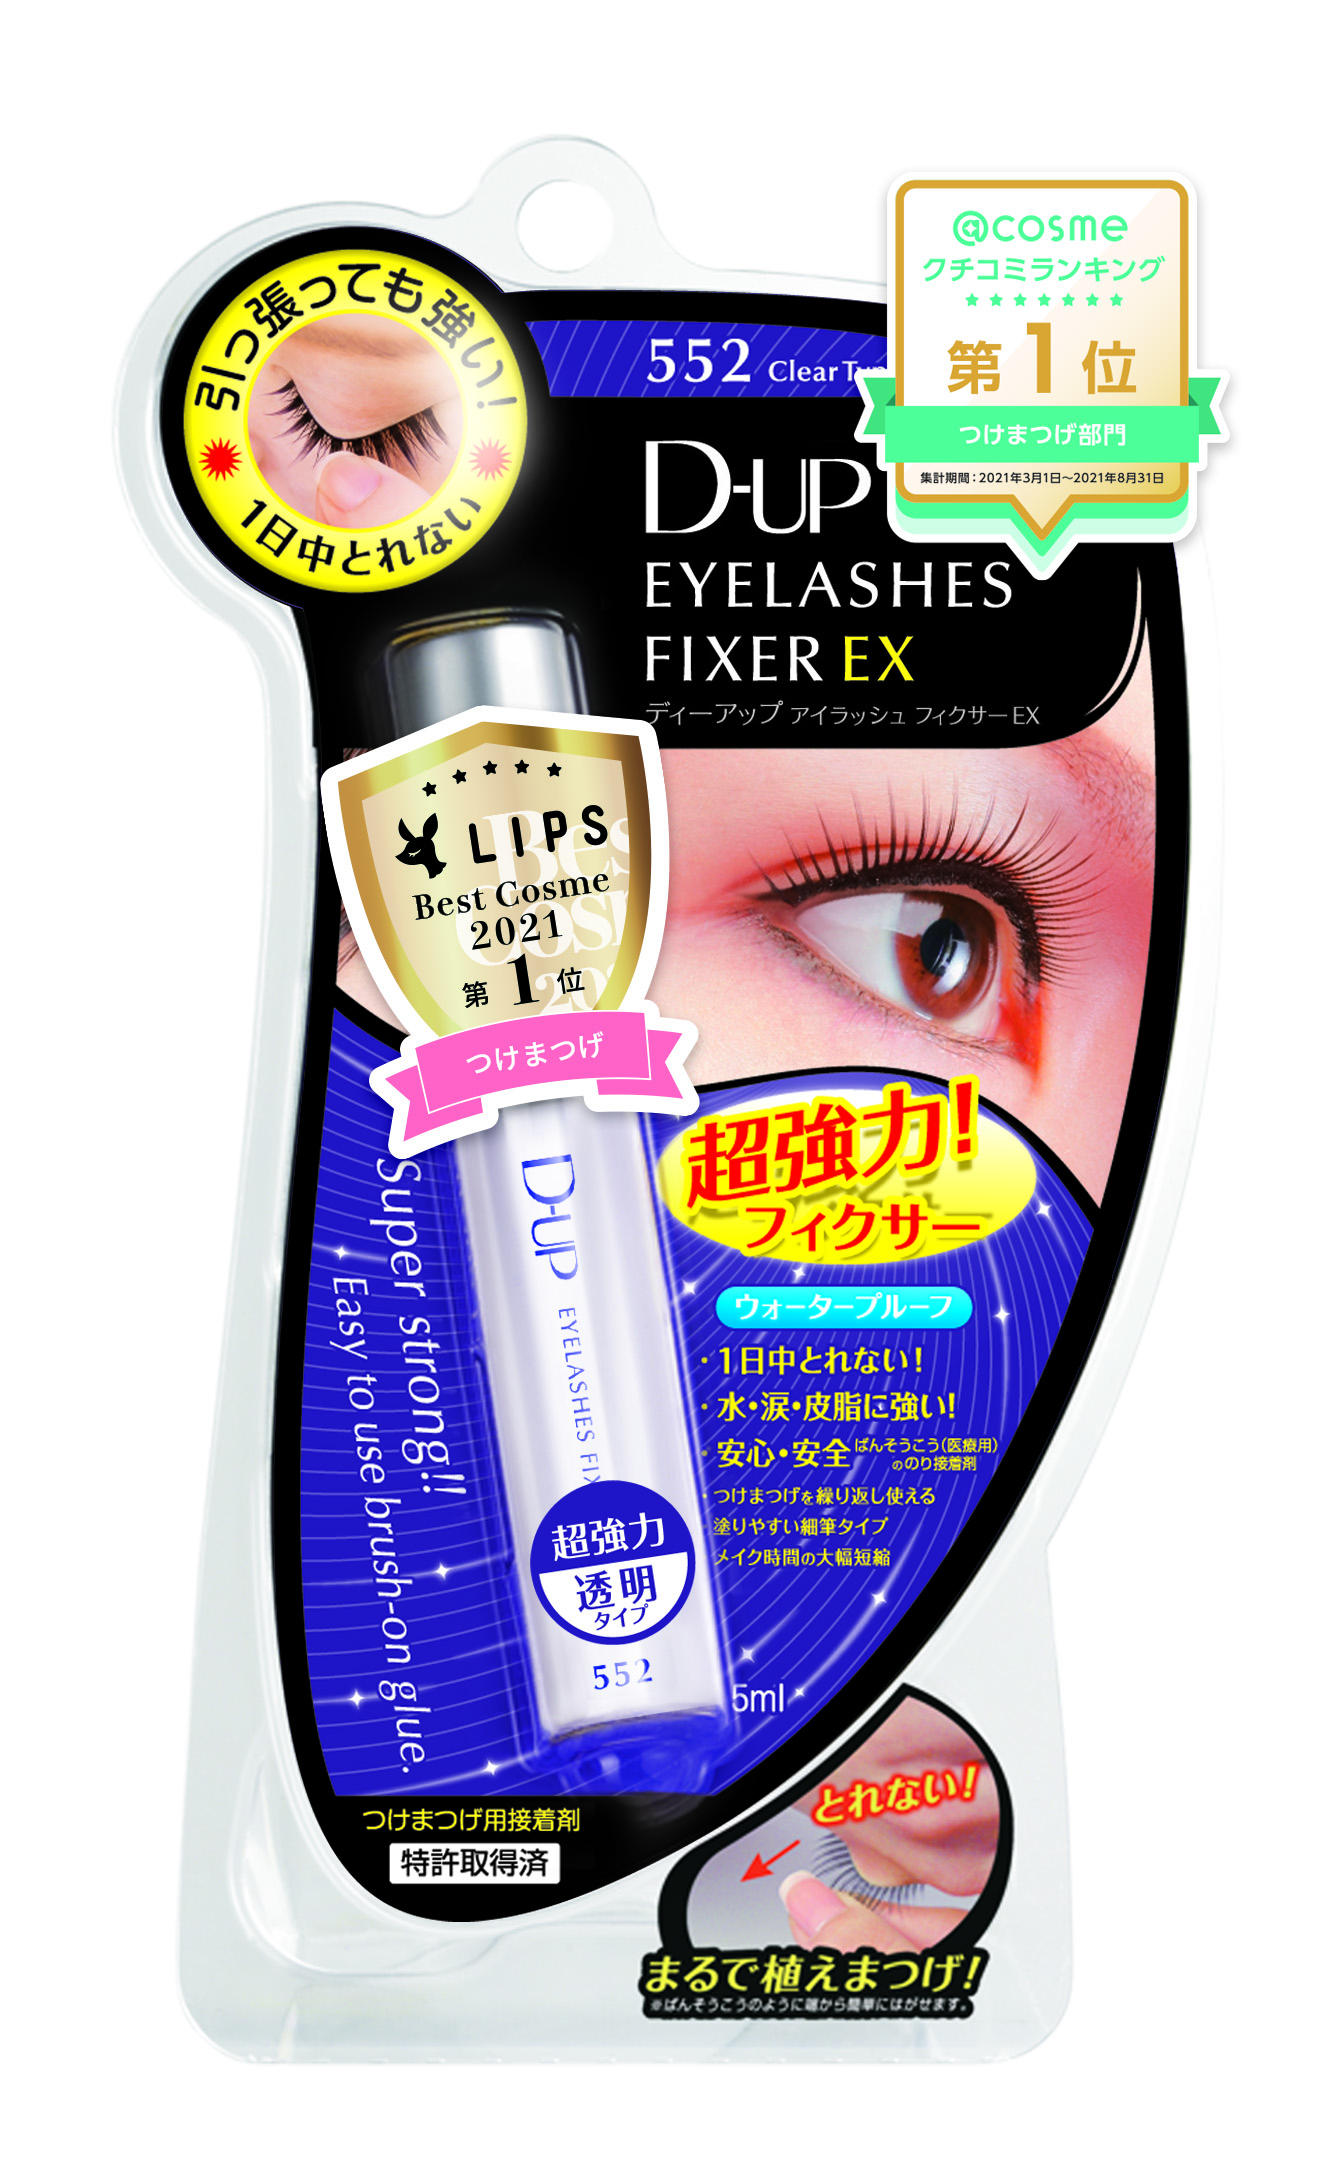 D-UP(ディーアップ) D.U.P アイラッシュフィクサー EX 通常パッケージ 単品 552